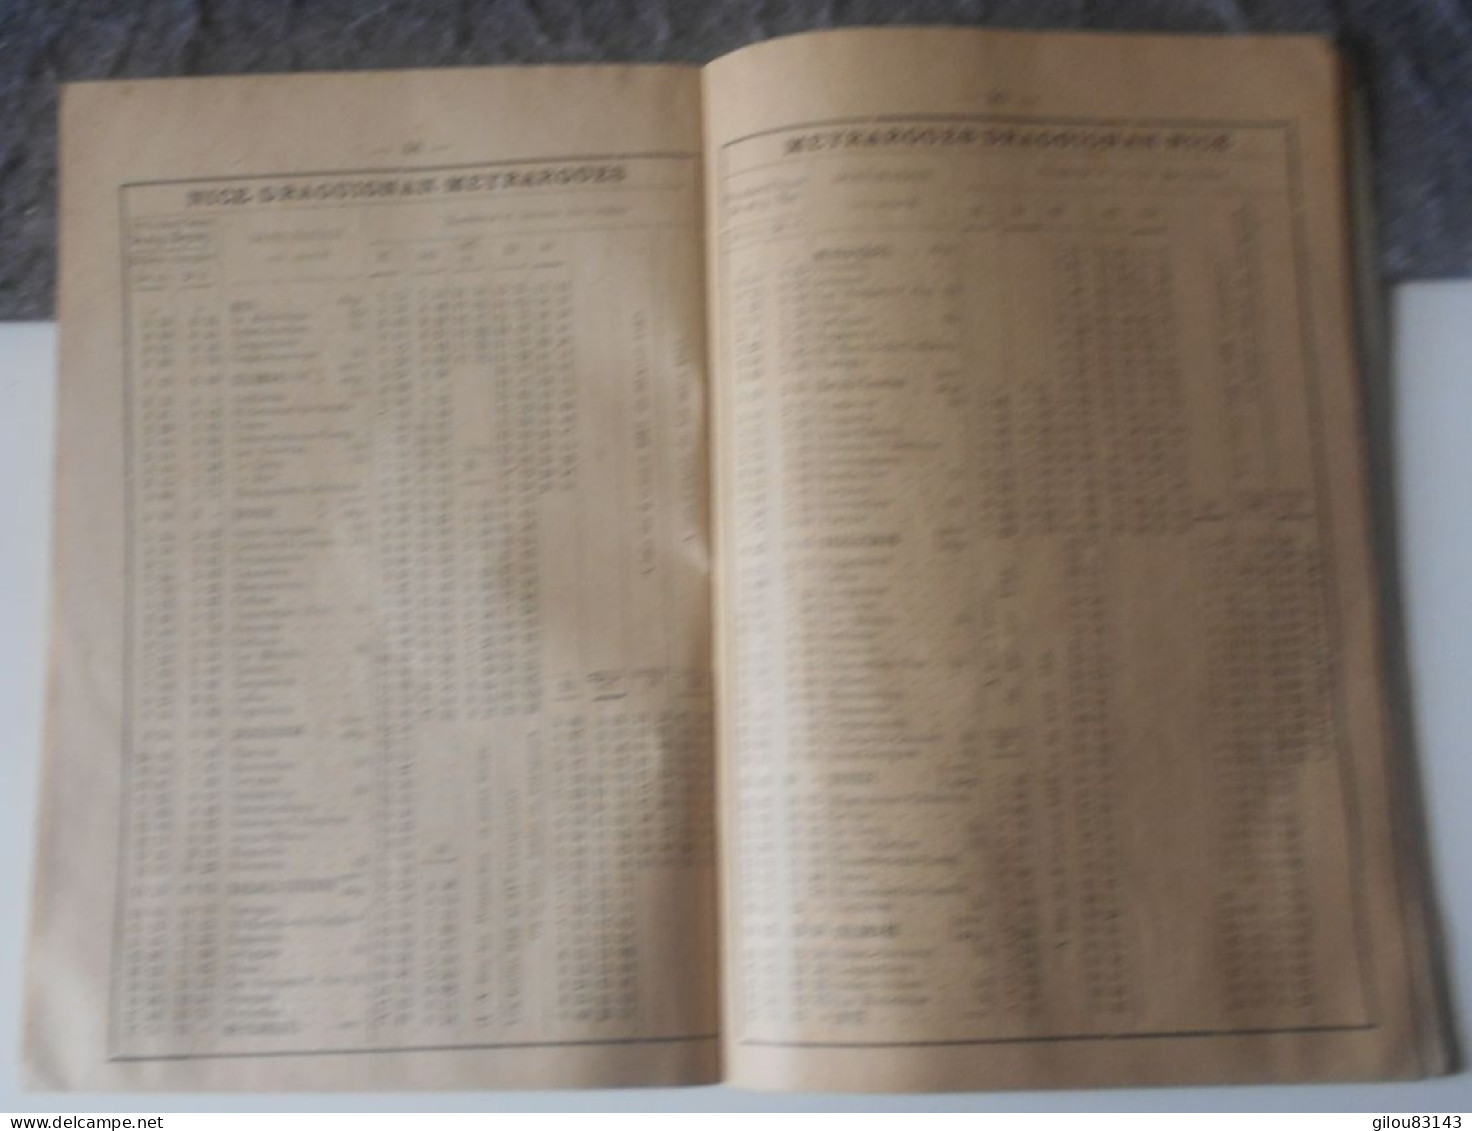 Indicateur de la Republique du Var, chemins de fer, renseignements, horaires, publicités, 1912, (80 pages).